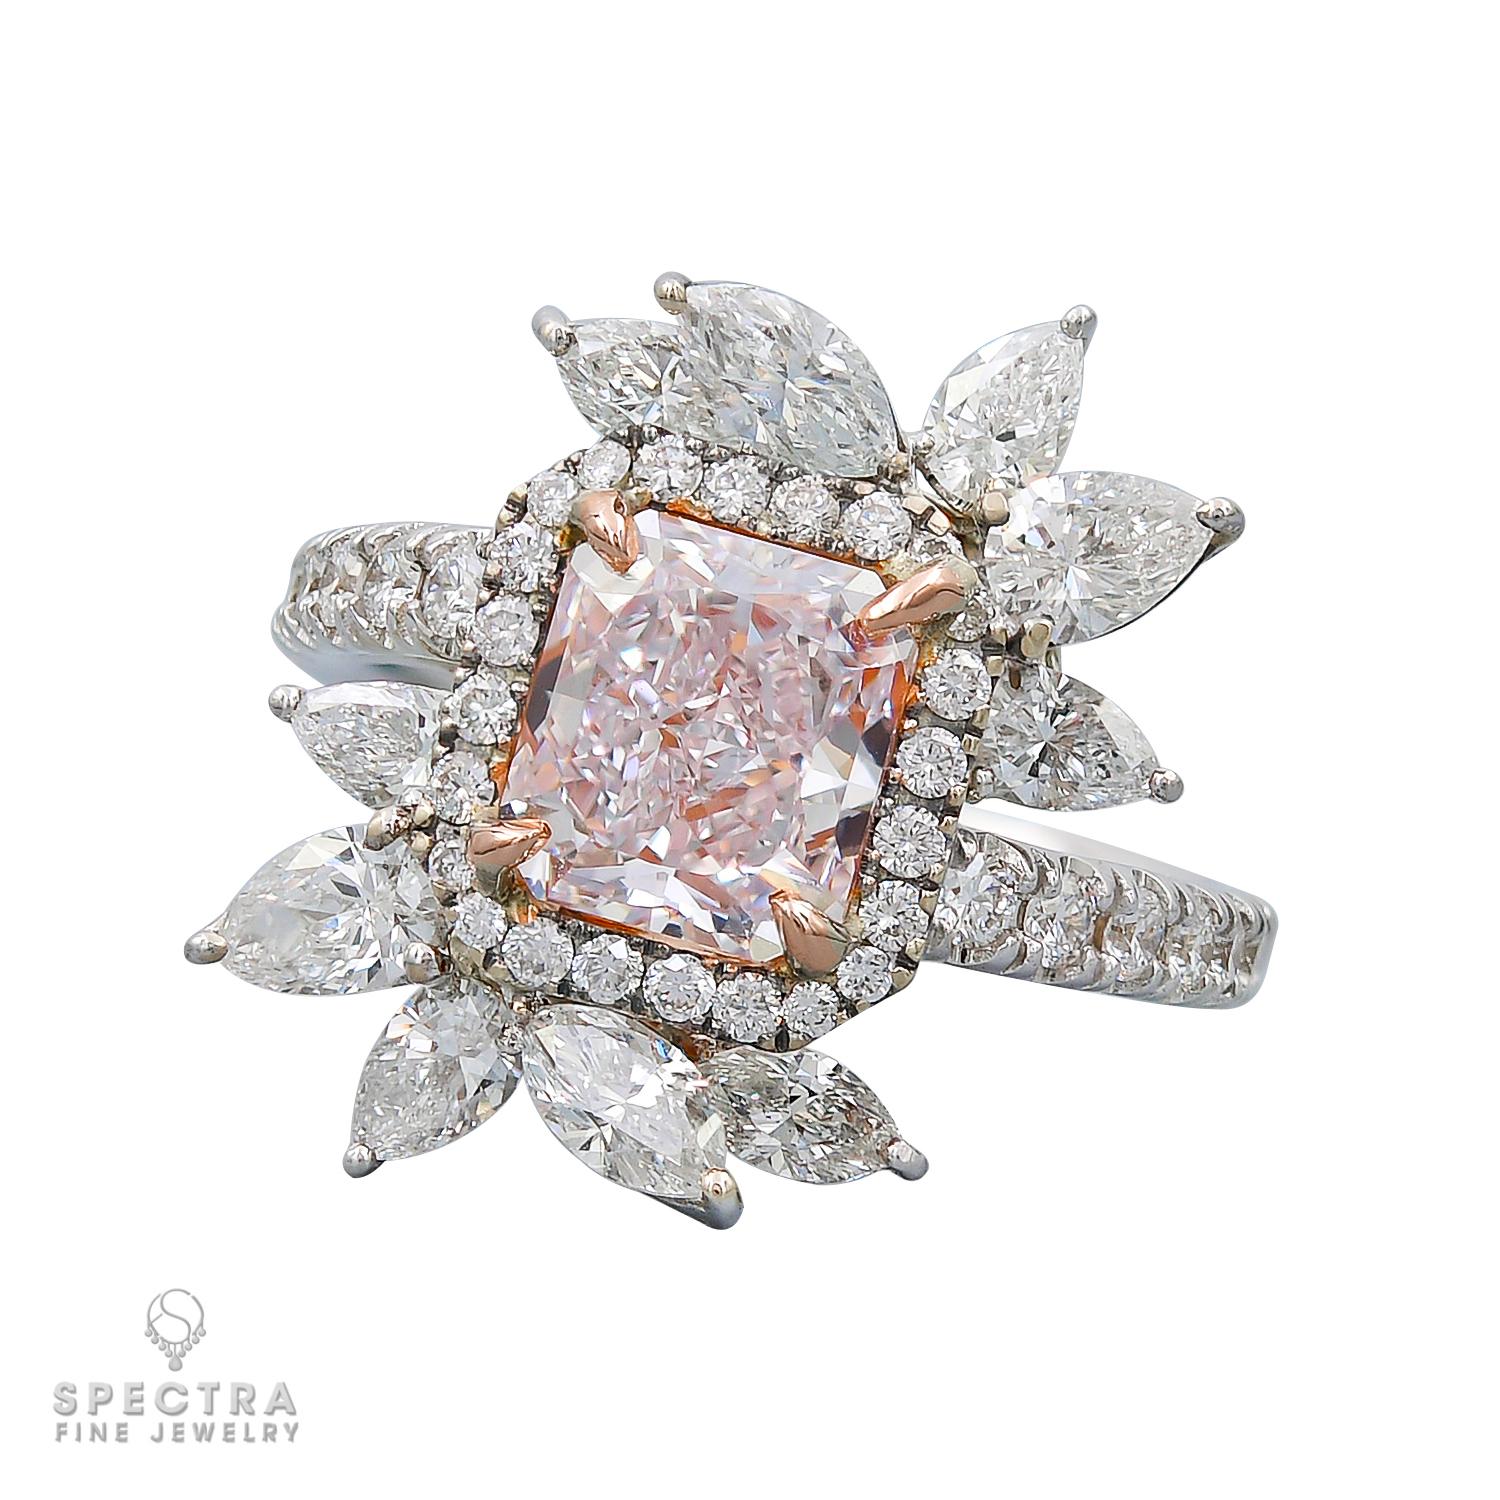 Sehen Sie sich das neueste Meisterwerk von Spectra Fine Jewelry an, den GIA-zertifizierten 2,62-Karat-Cocktailring mit rosa Diamanten - ein faszinierendes Symbol für Eleganz und Verführung. Dieser außergewöhnliche Cocktailring präsentiert in seiner